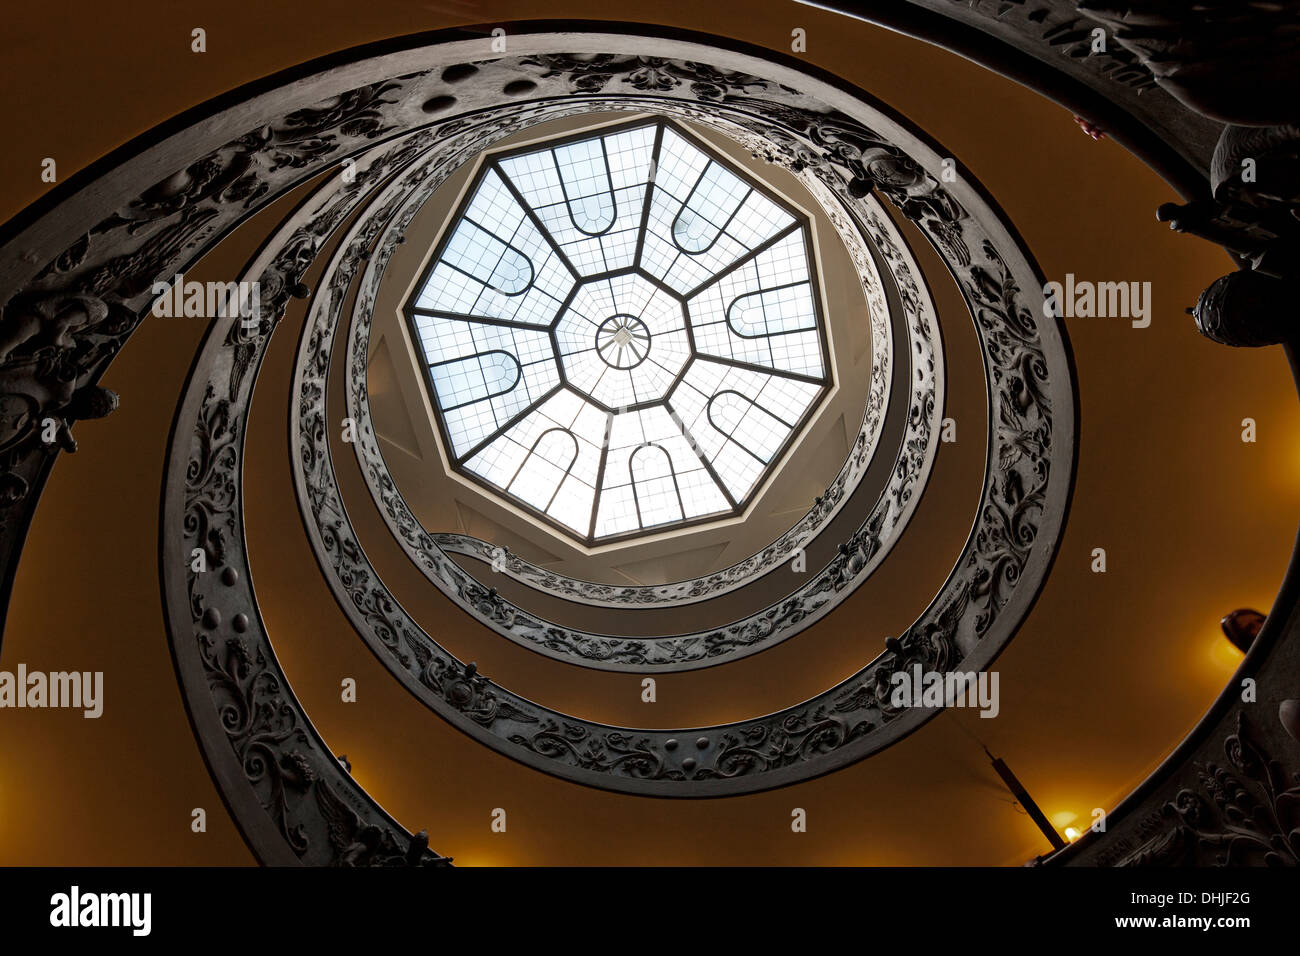 Mirando hacia arriba en una escalera circular ornadte, Ciudad del Vaticano, Roma, Italia. Foto de stock